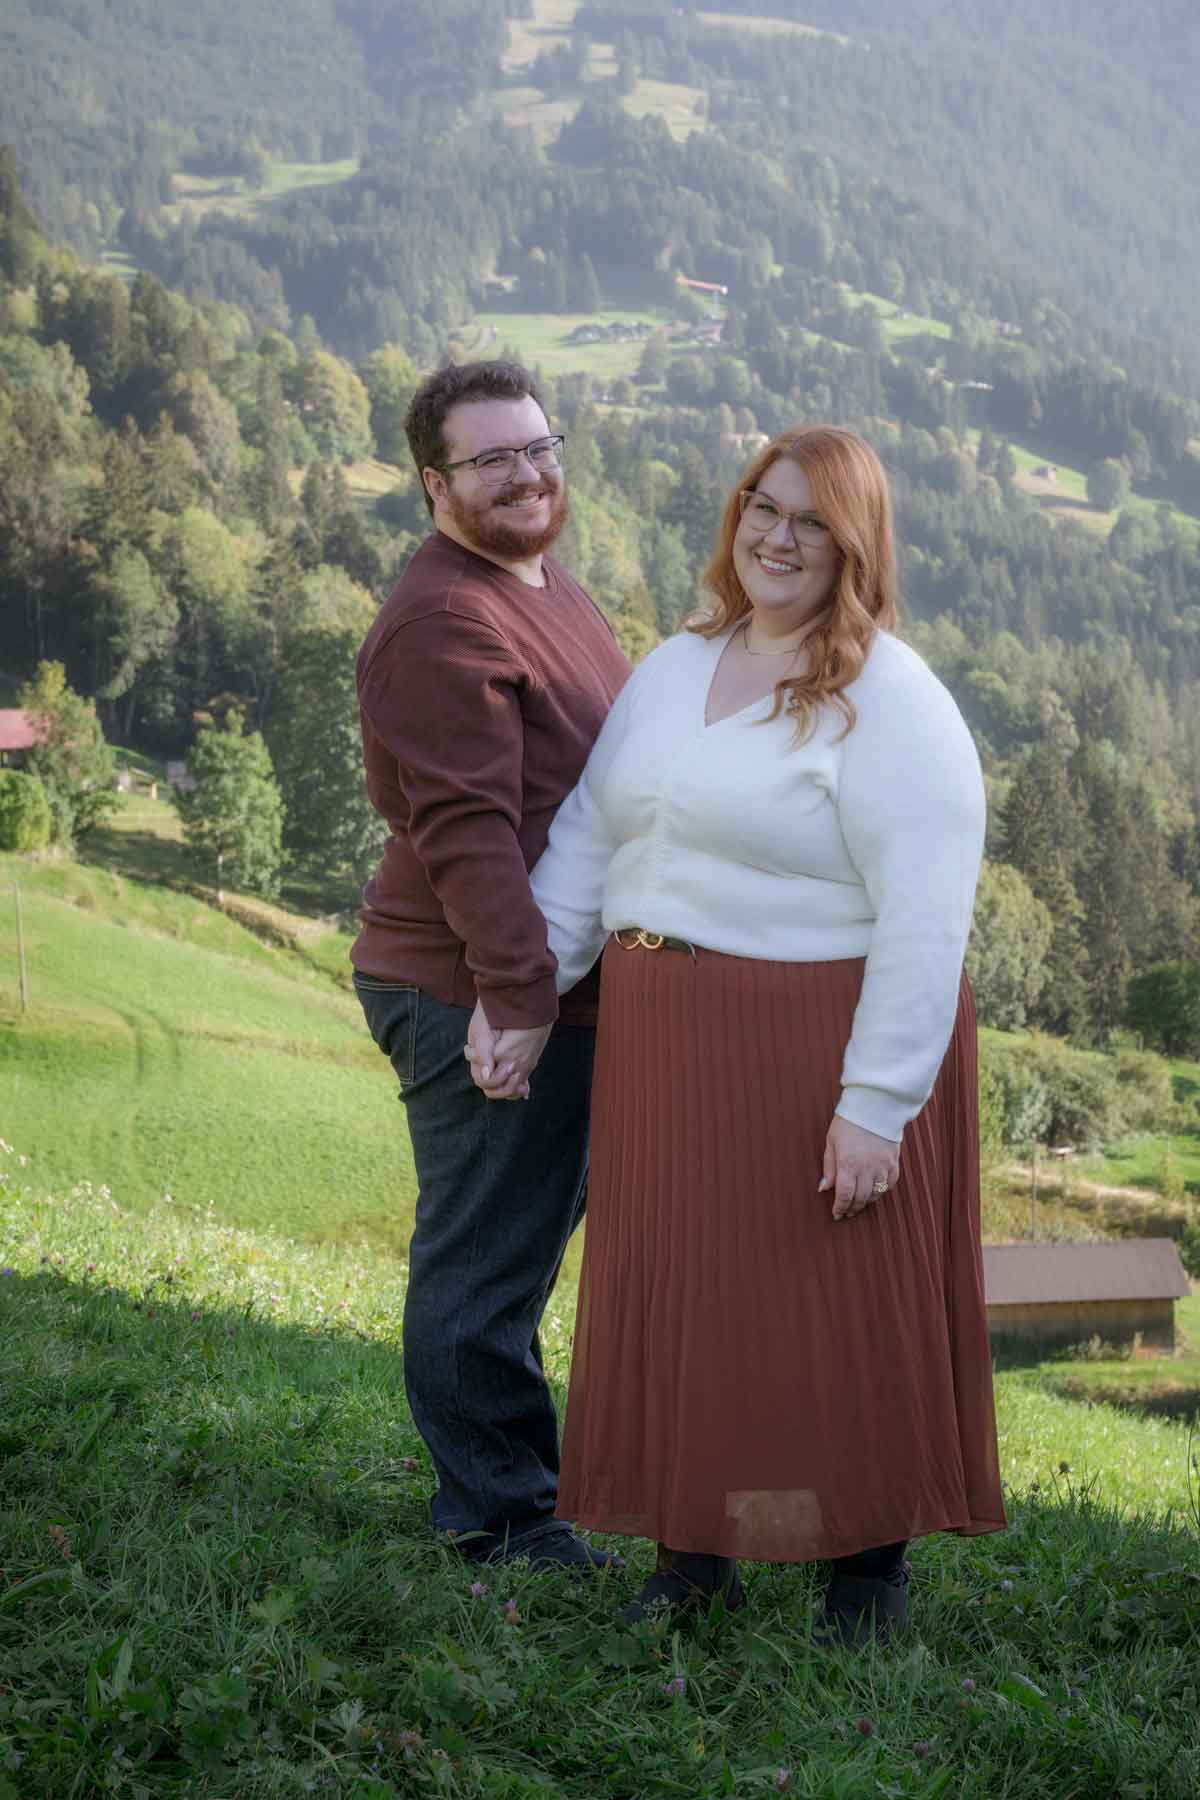 Wedding Anniversary Photo Shoot in Switzerland